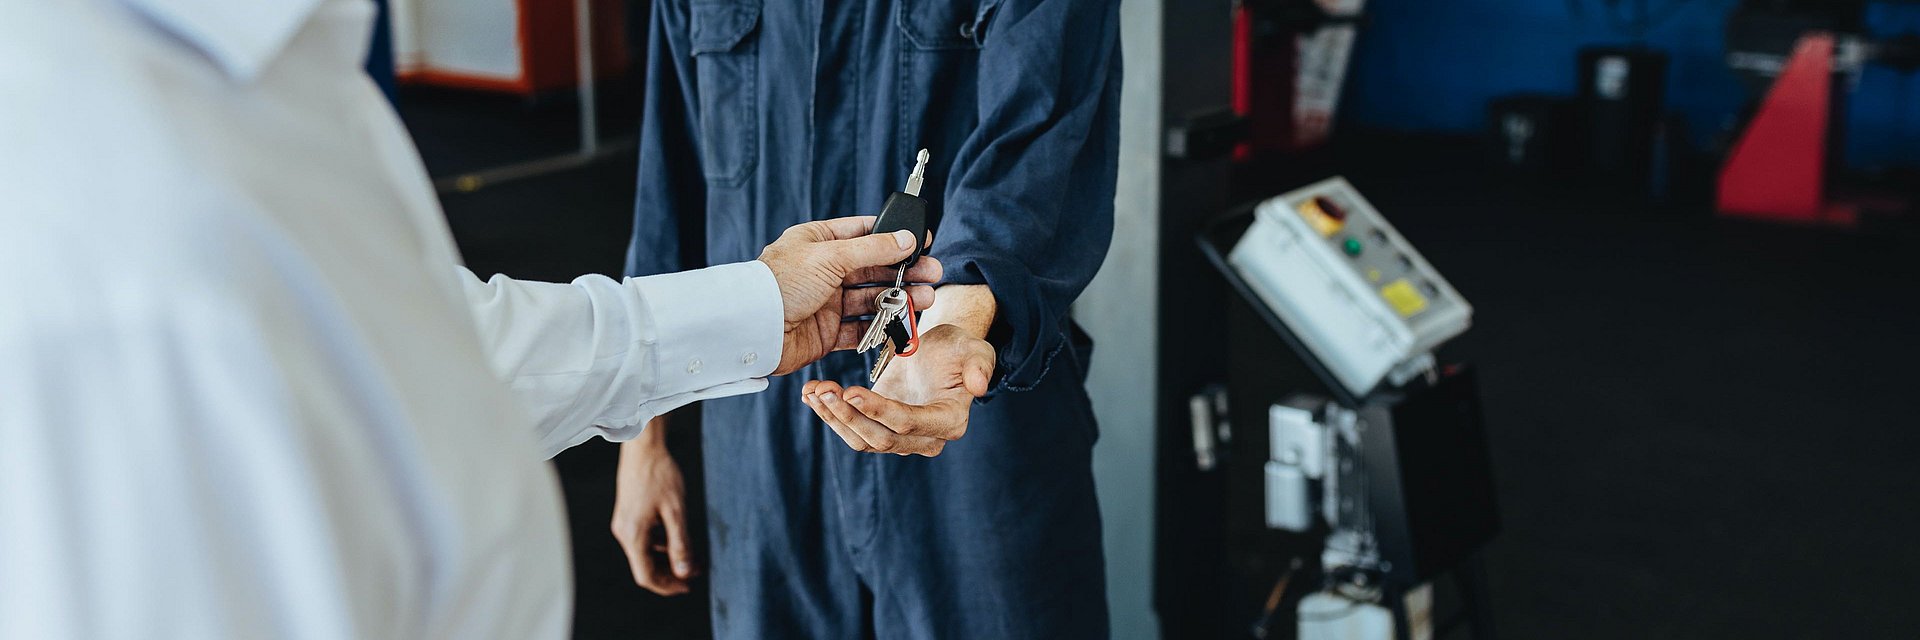 Eine Person übergibt einen Schlüssel an einen Werkstattmitarbeiter